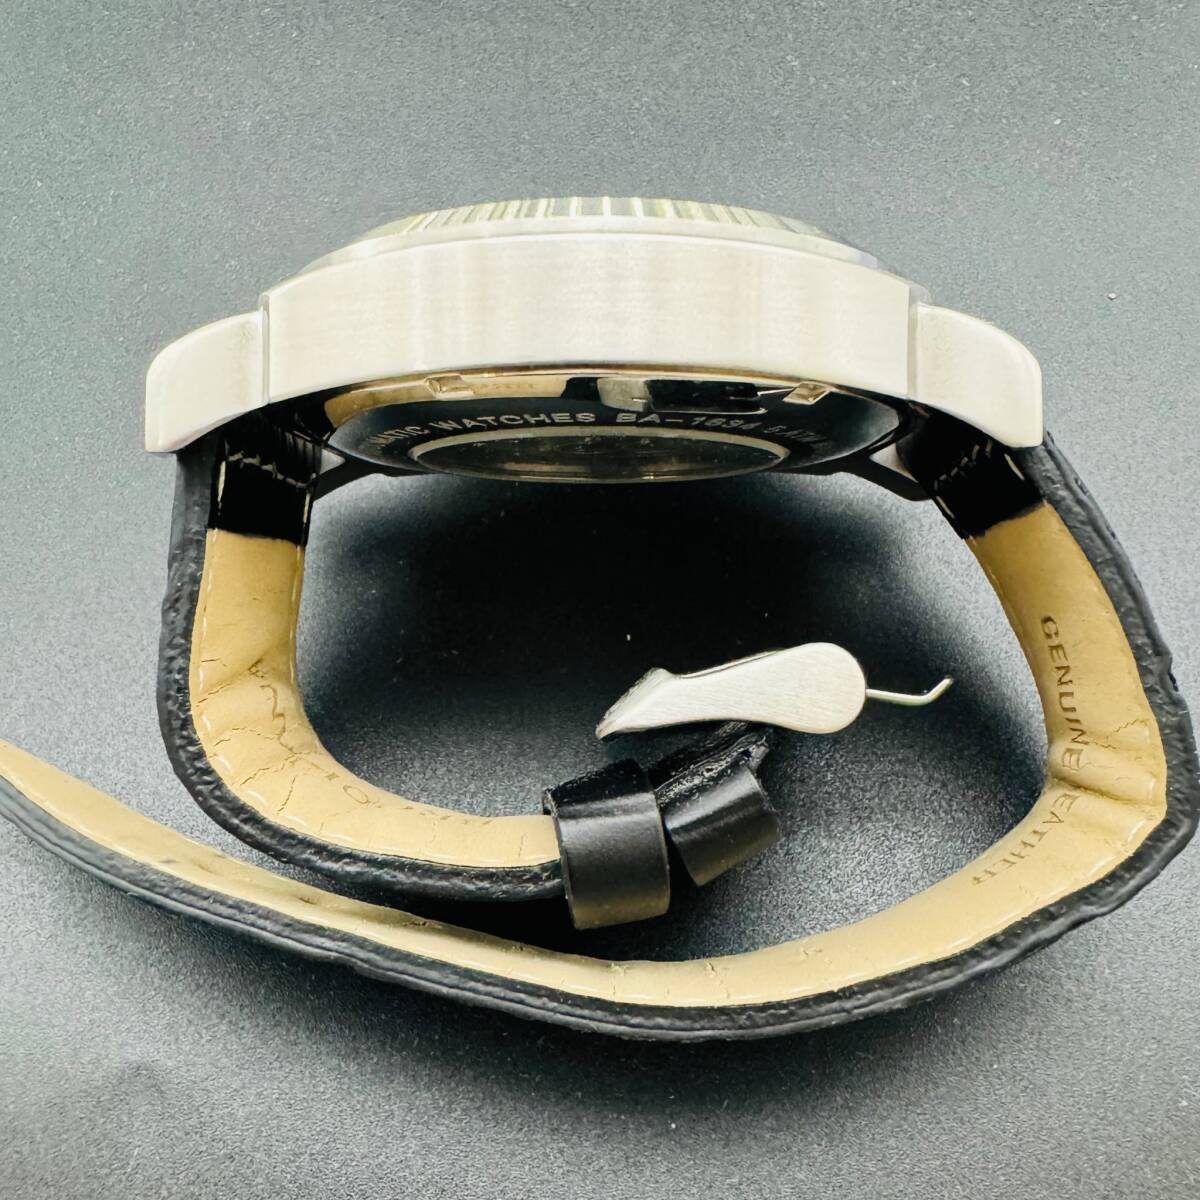 BROOKIANA ブルッキアーナ BA-1634 自動巻き オートマチック 稼働 ガラスくもり ベルト劣化 箱付き 腕時計 格安 コレクション 1円出品 8088の画像5